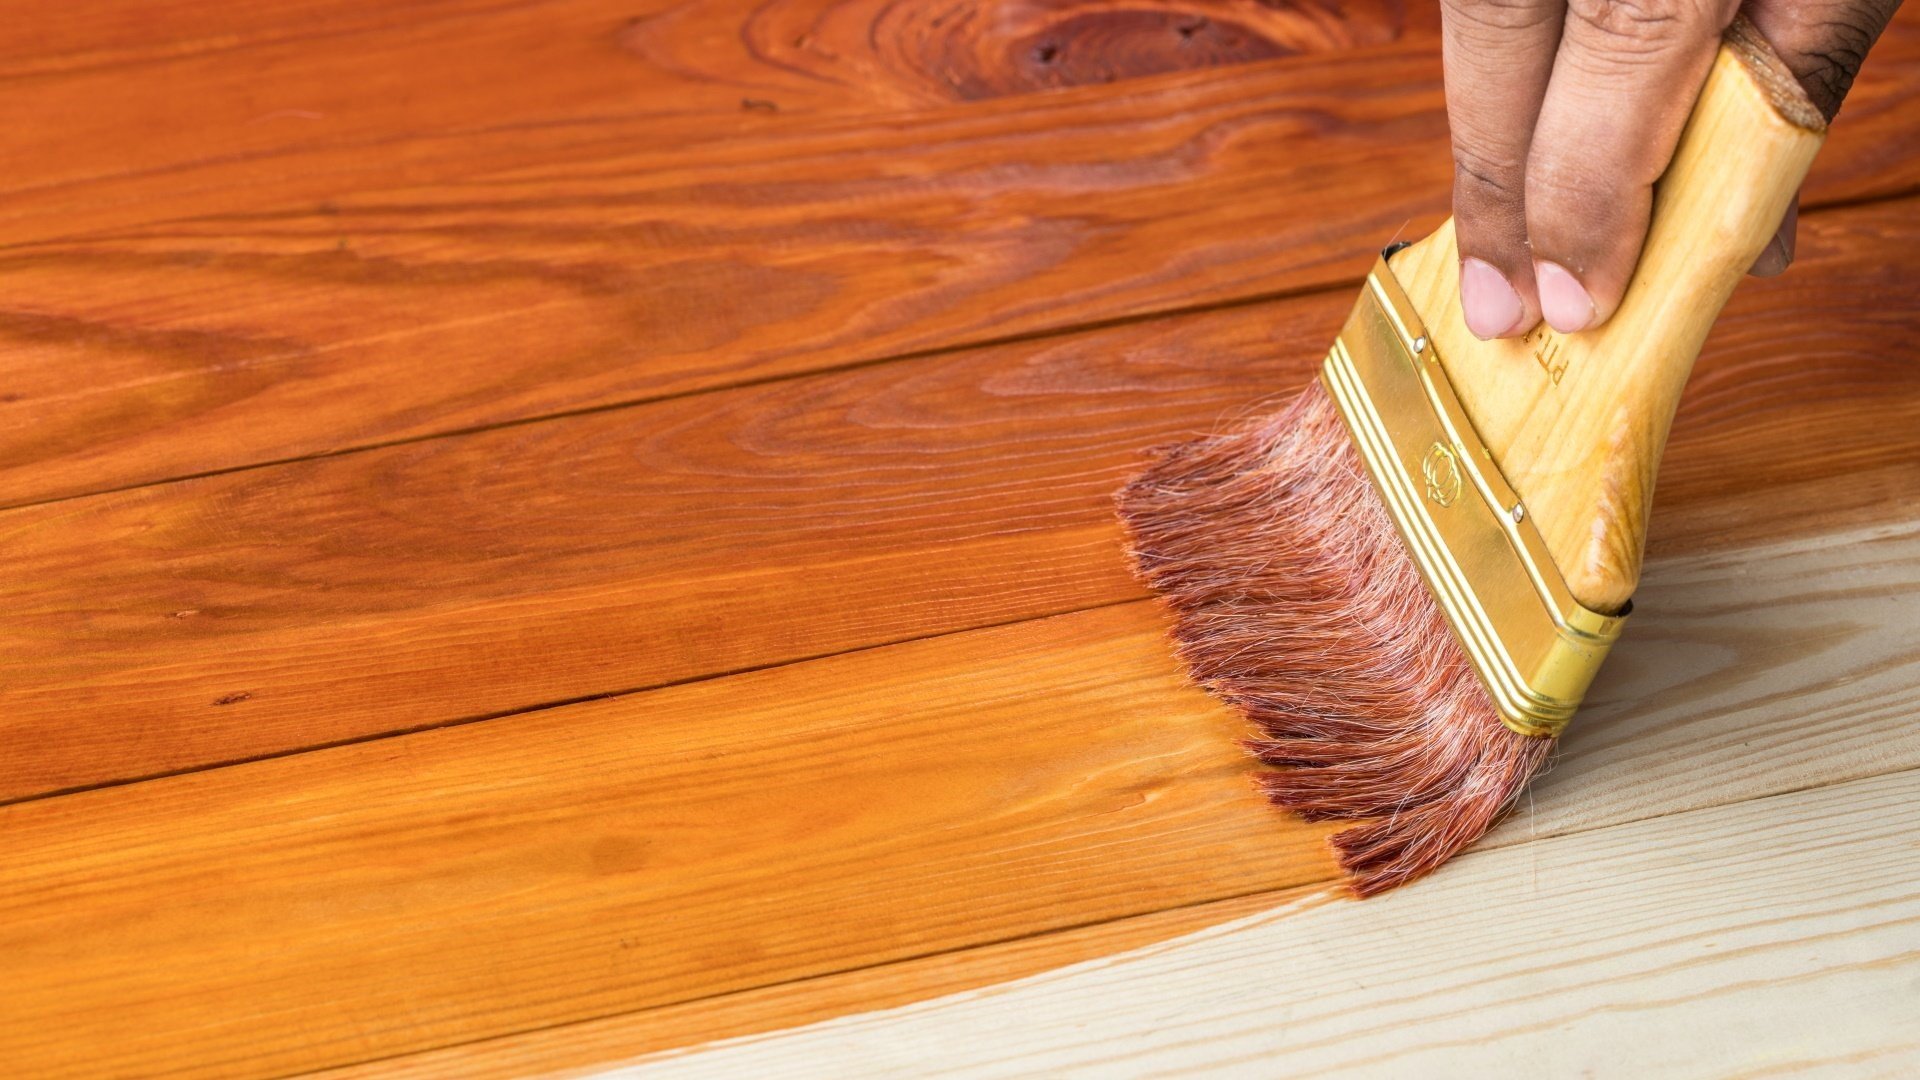 Tipos de barnices para madera • Confort y Muebles Blog